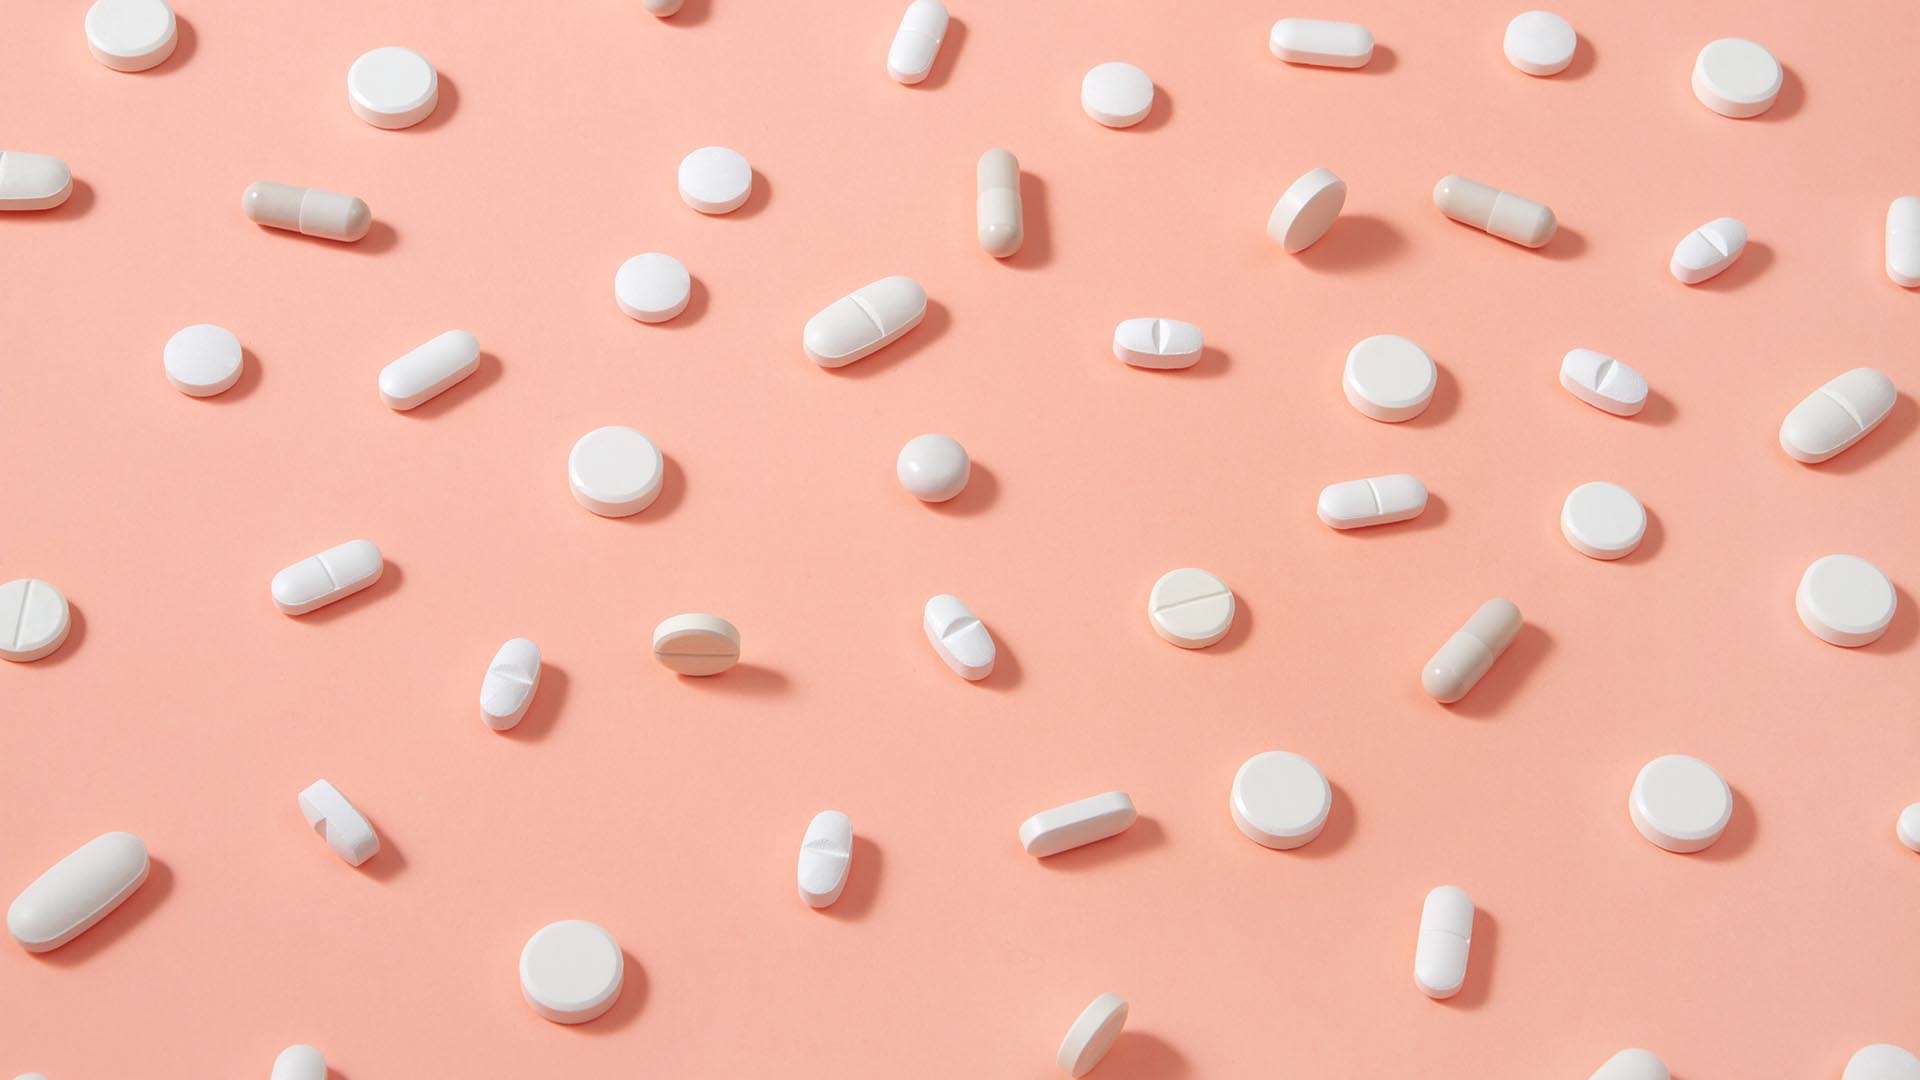 El fármaco podría ser comercializado en farmacias a partir de ahora